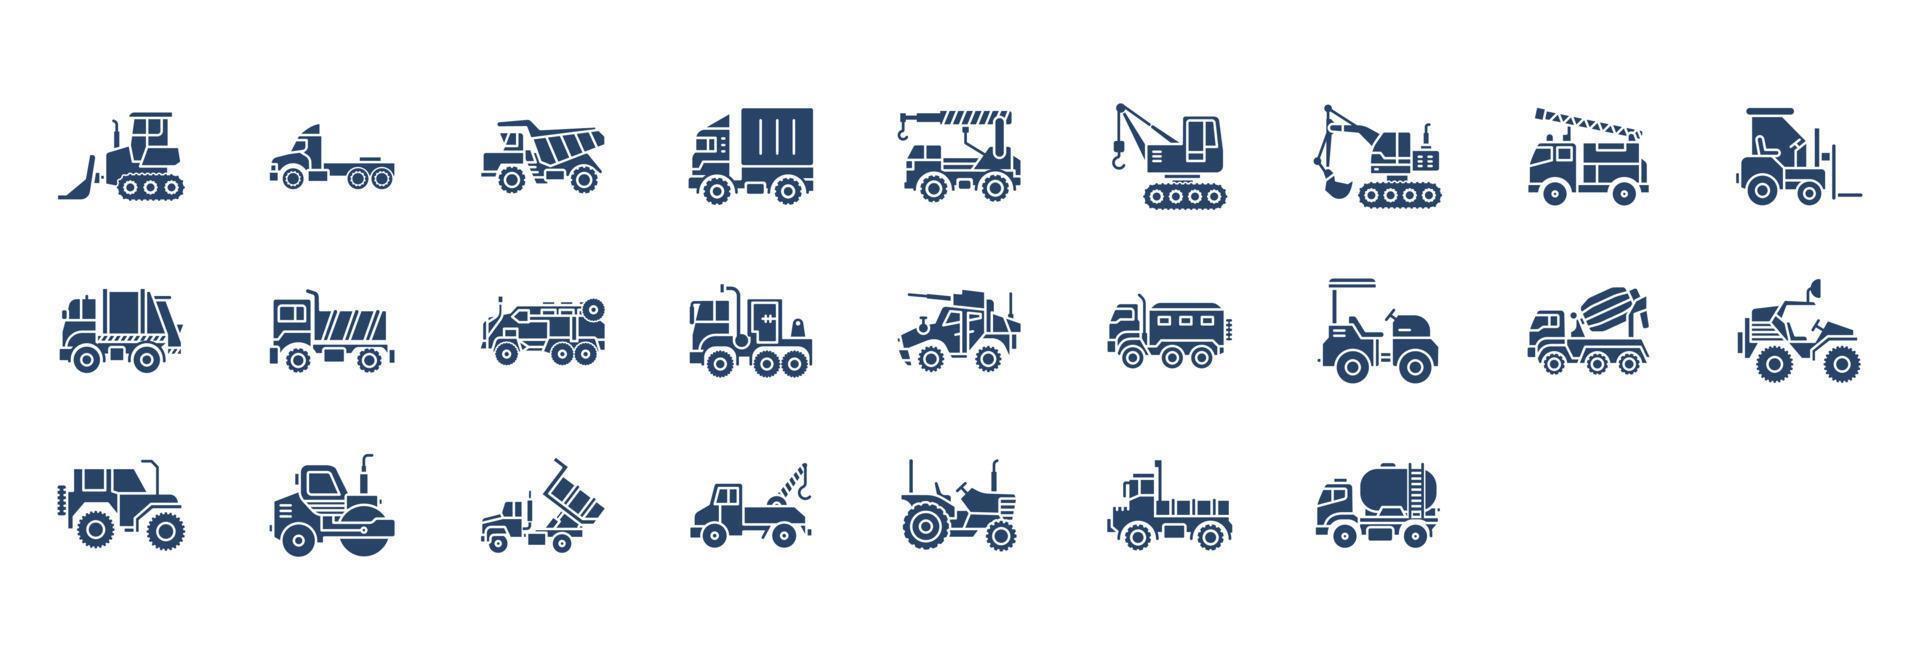 verzameling van pictogrammen verwant naar voertuigen, inclusief pictogrammen Leuk vinden kraan, brand vrachtwagen, vrachtwagen, en meer. vector illustraties, pixel perfect reeks